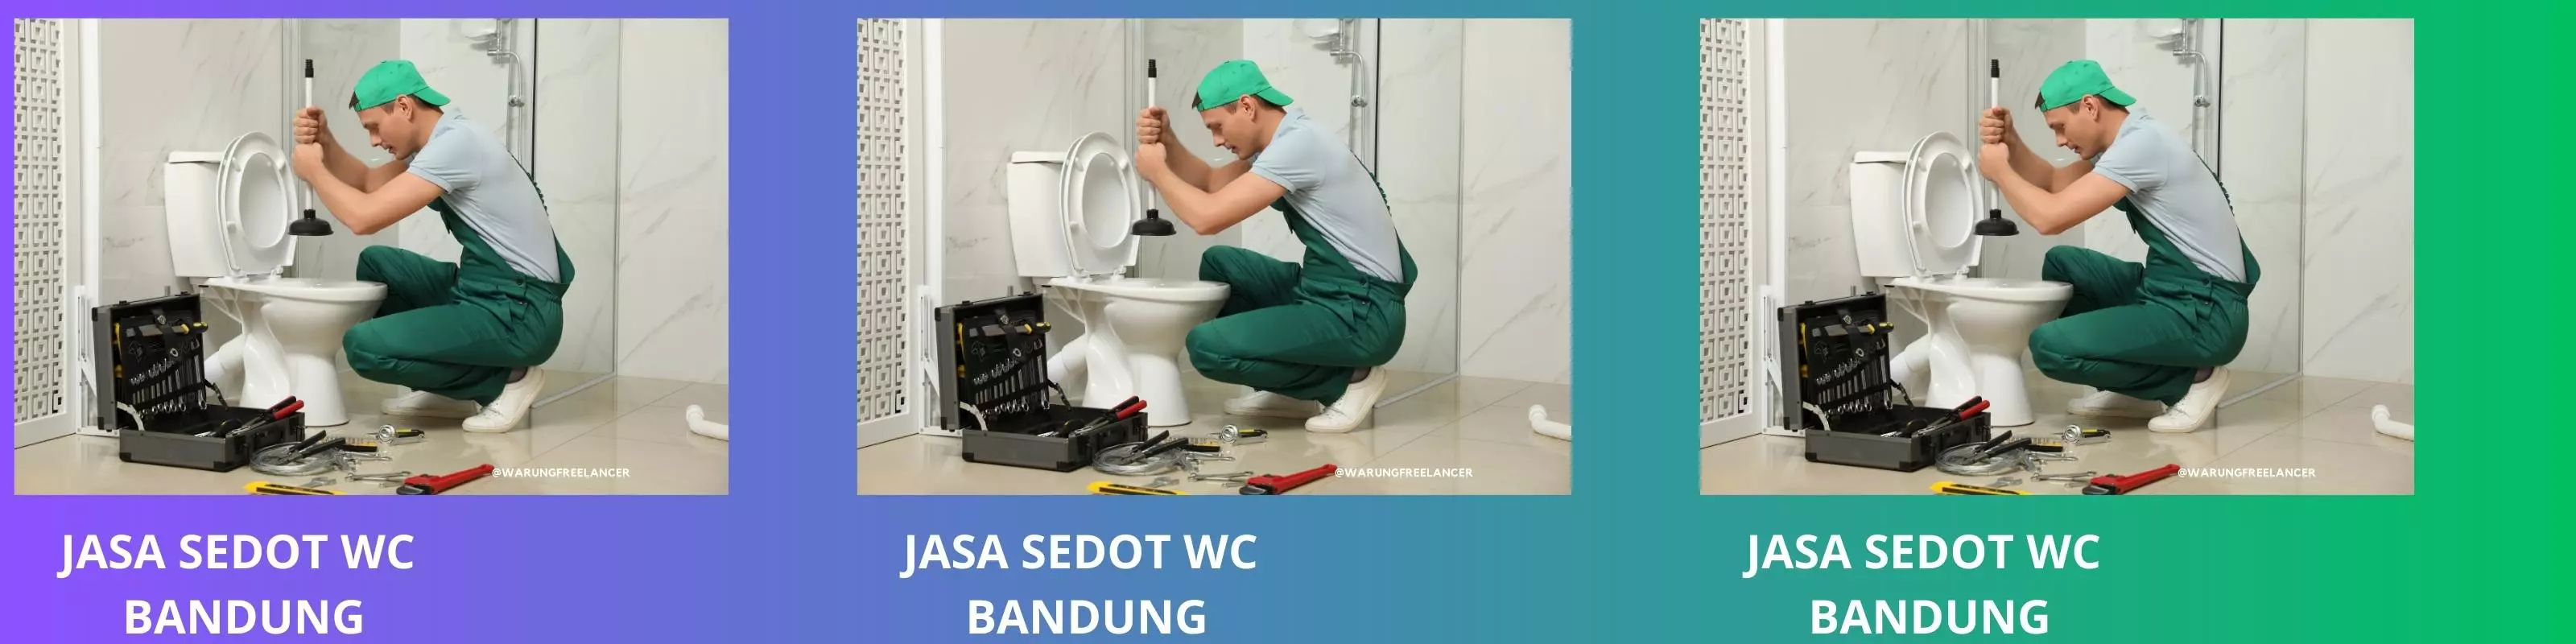 Jasa Sedot WC Bandung